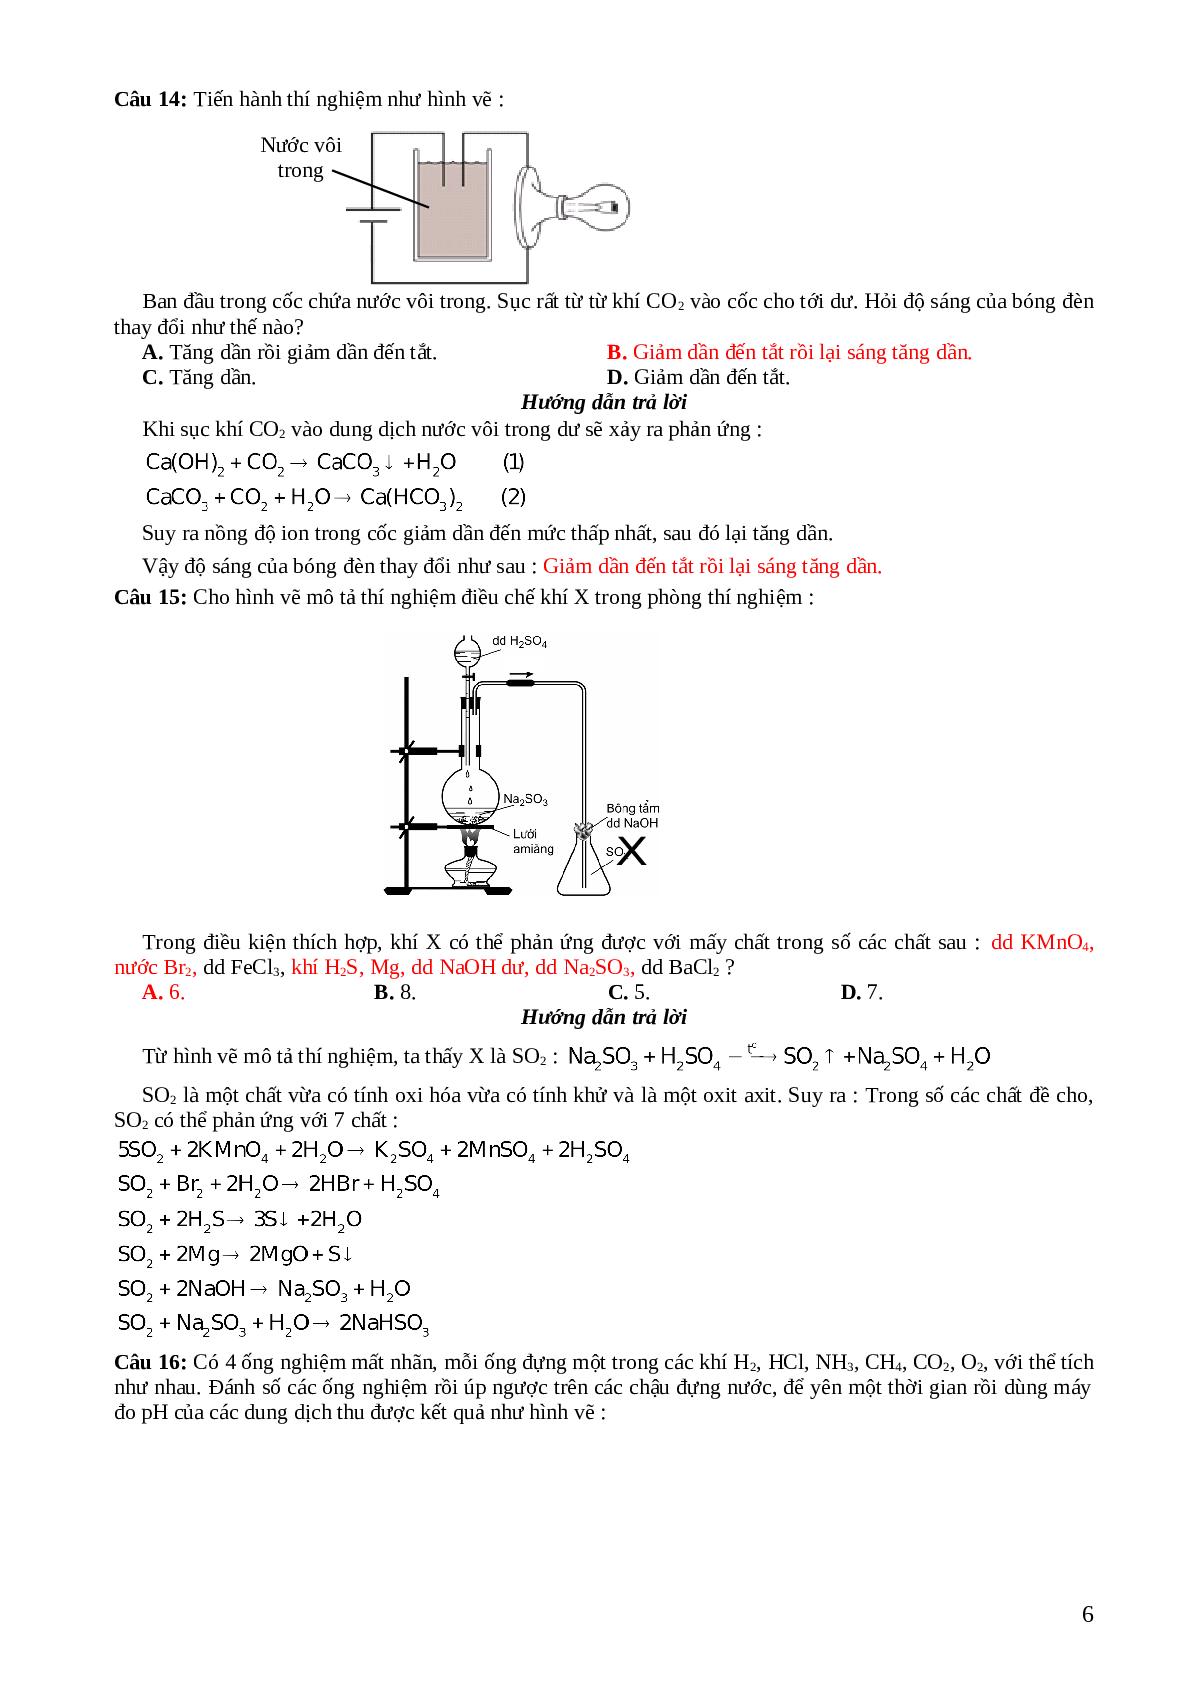 33 câu trắc nghiệm về hình  vẽ thí nghiệm hóa học lớp 12 có đáp án 2023 (trang 6)